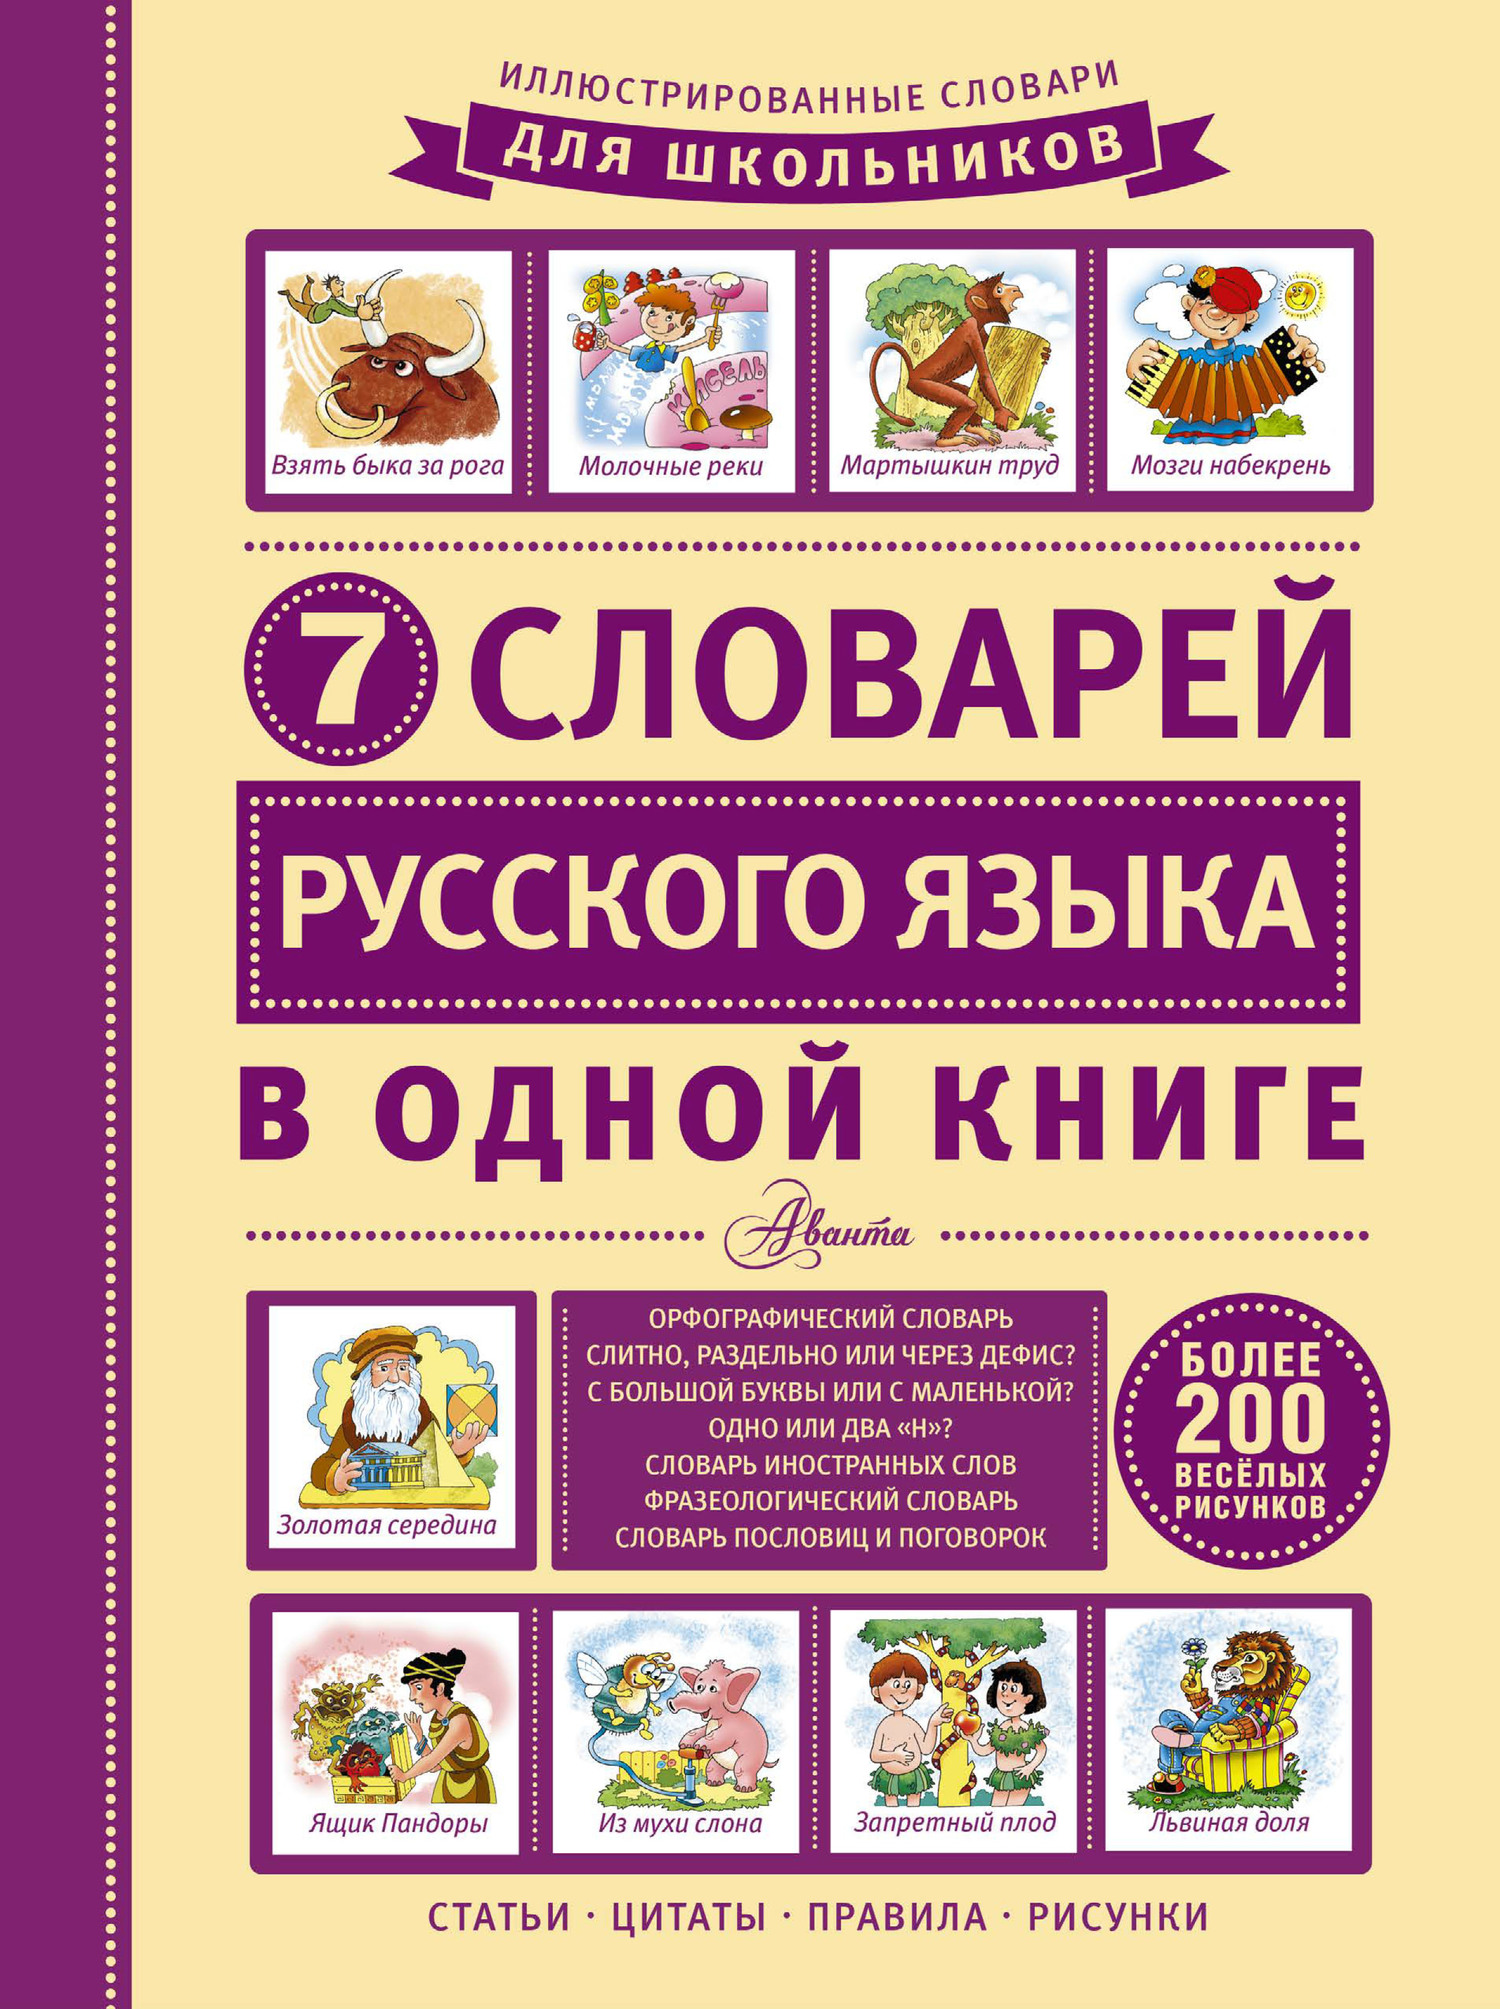 Скачать 7 словарей русского языка в одной книге быстро